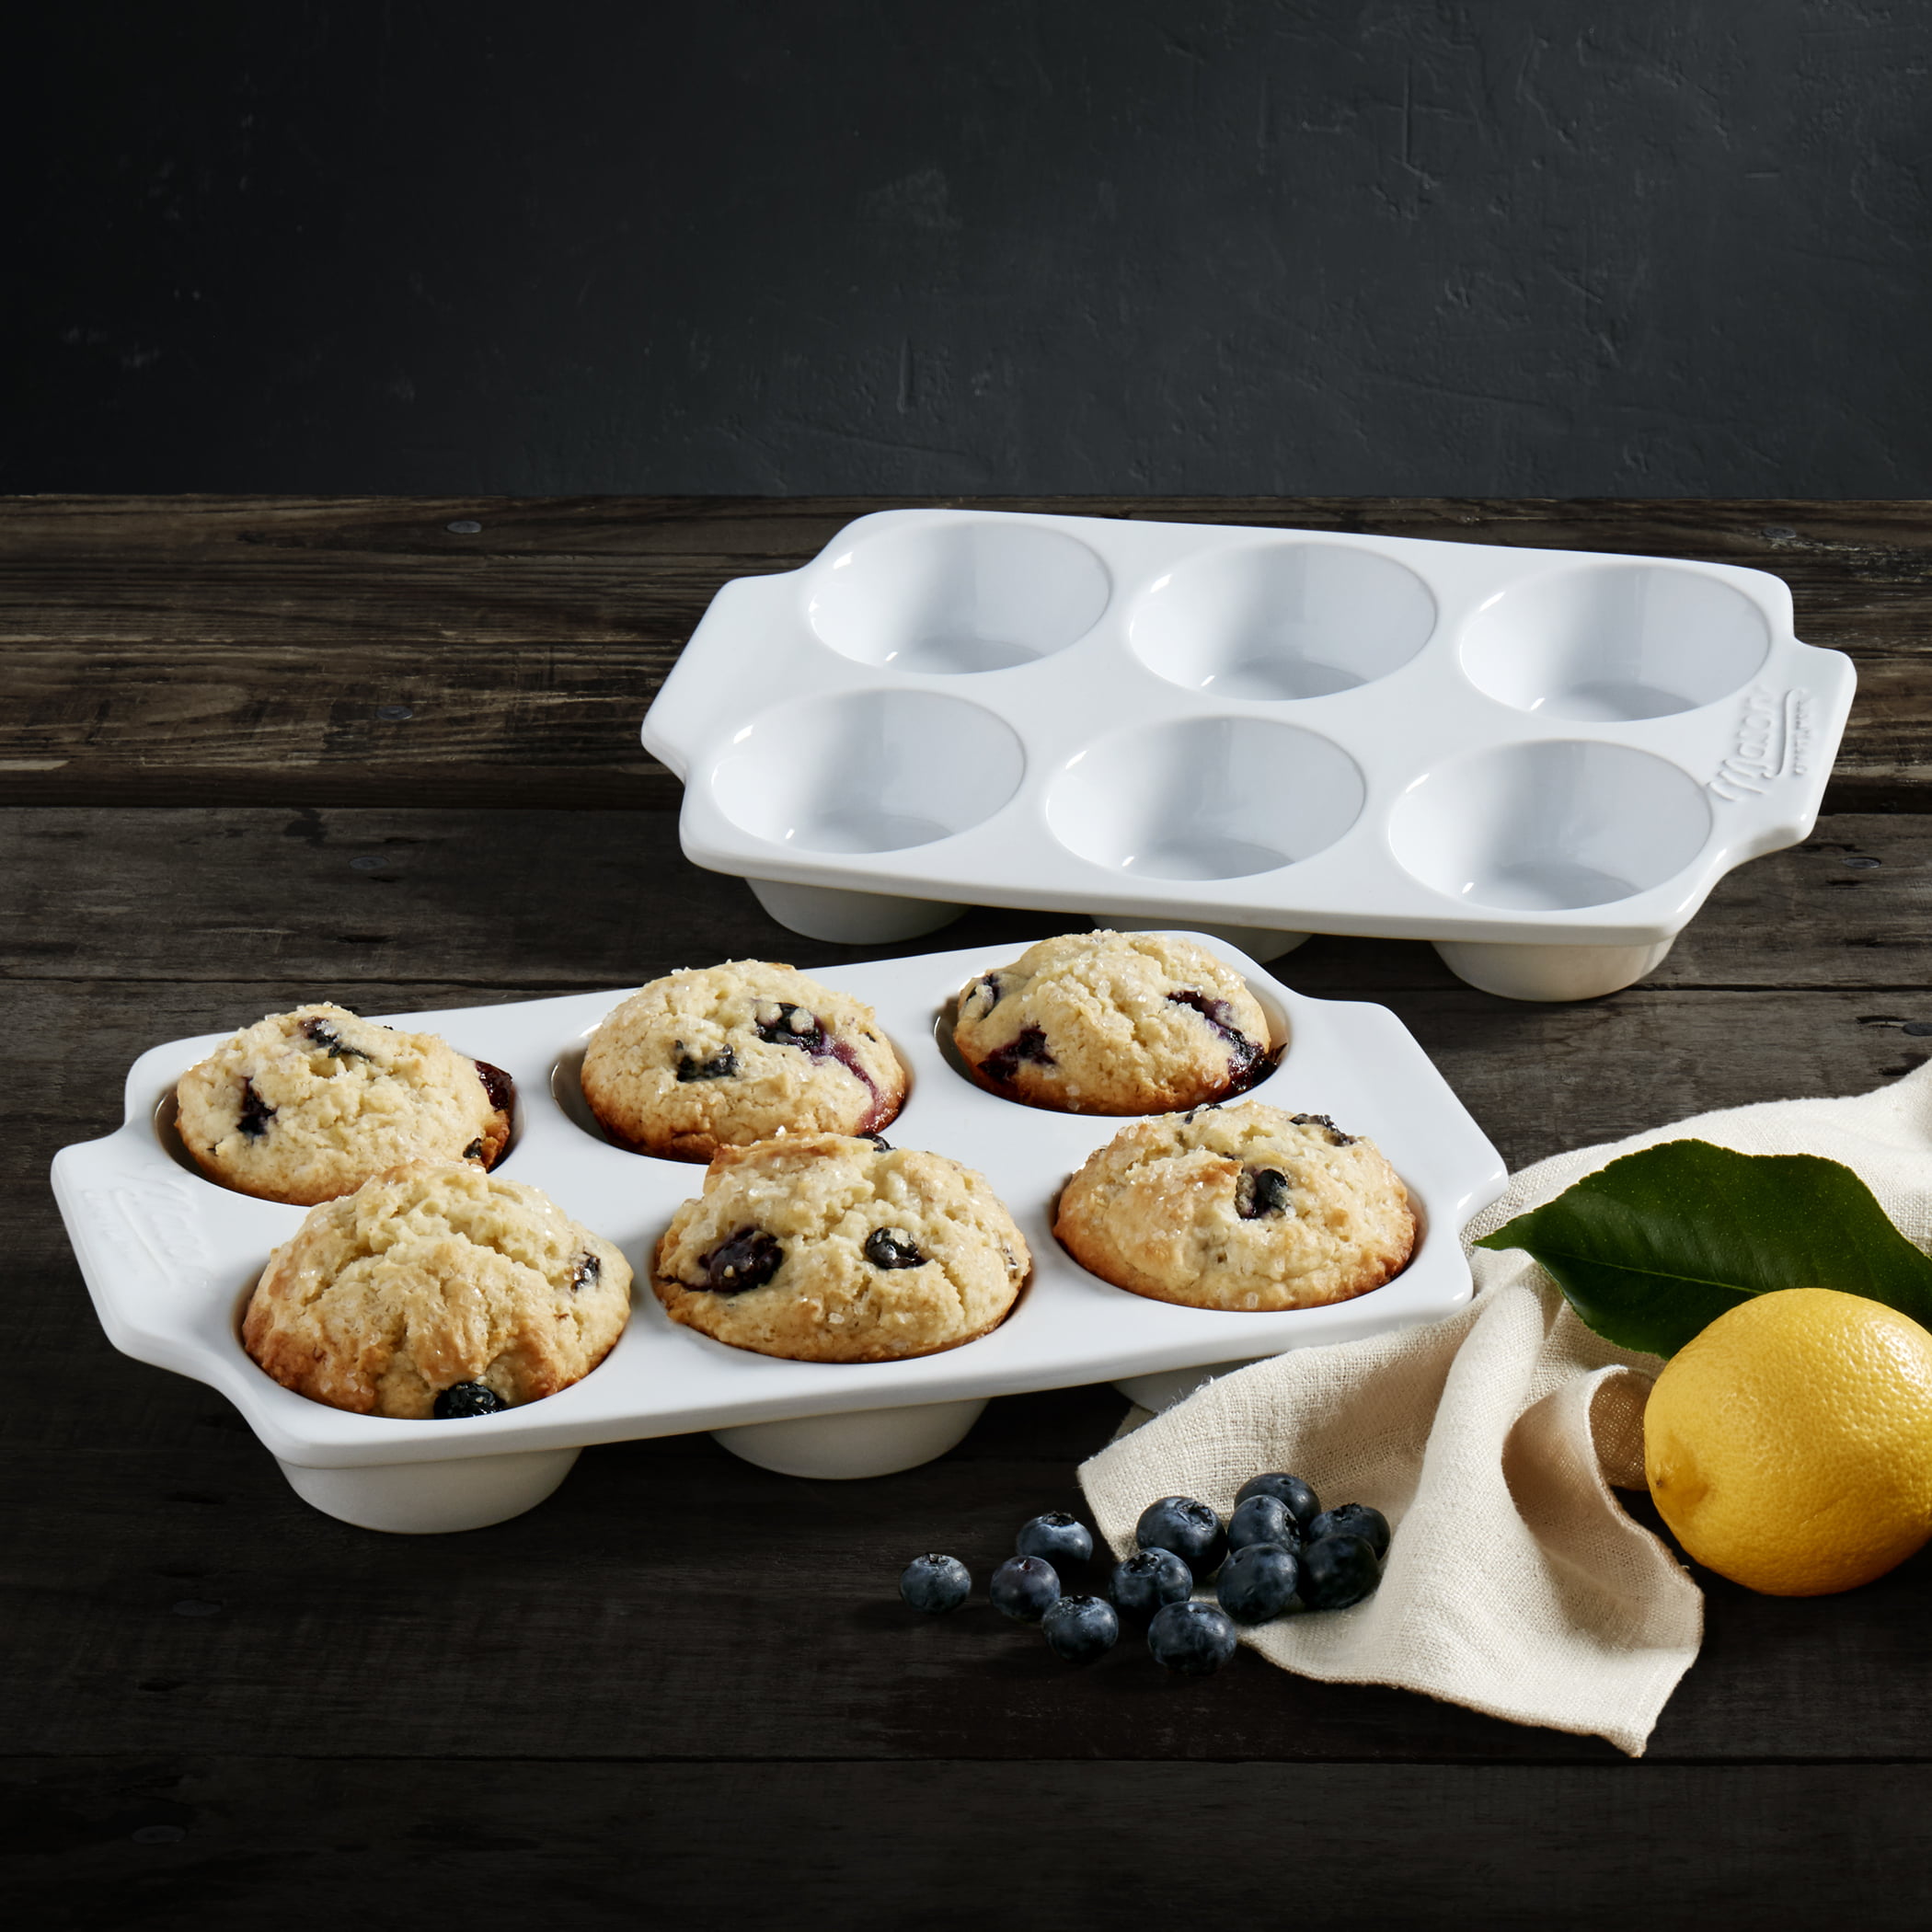 Mason Craft & More 3PC White Ceramic Bakeware Set